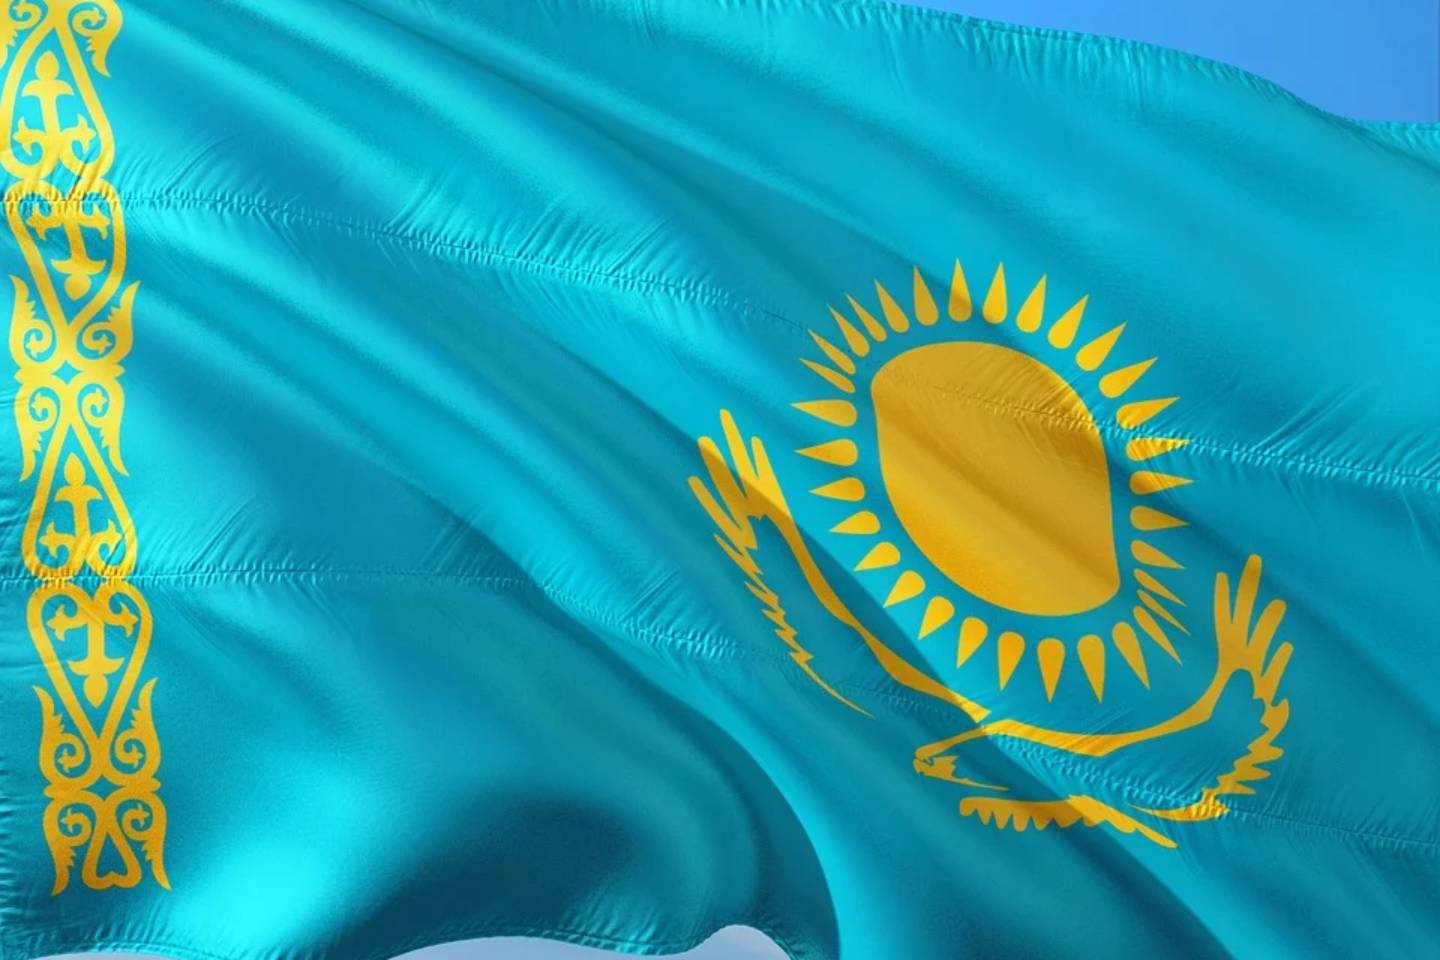 Новости мира / Политика в мире / Планирует ли Казахстан выход из ЕАЭС